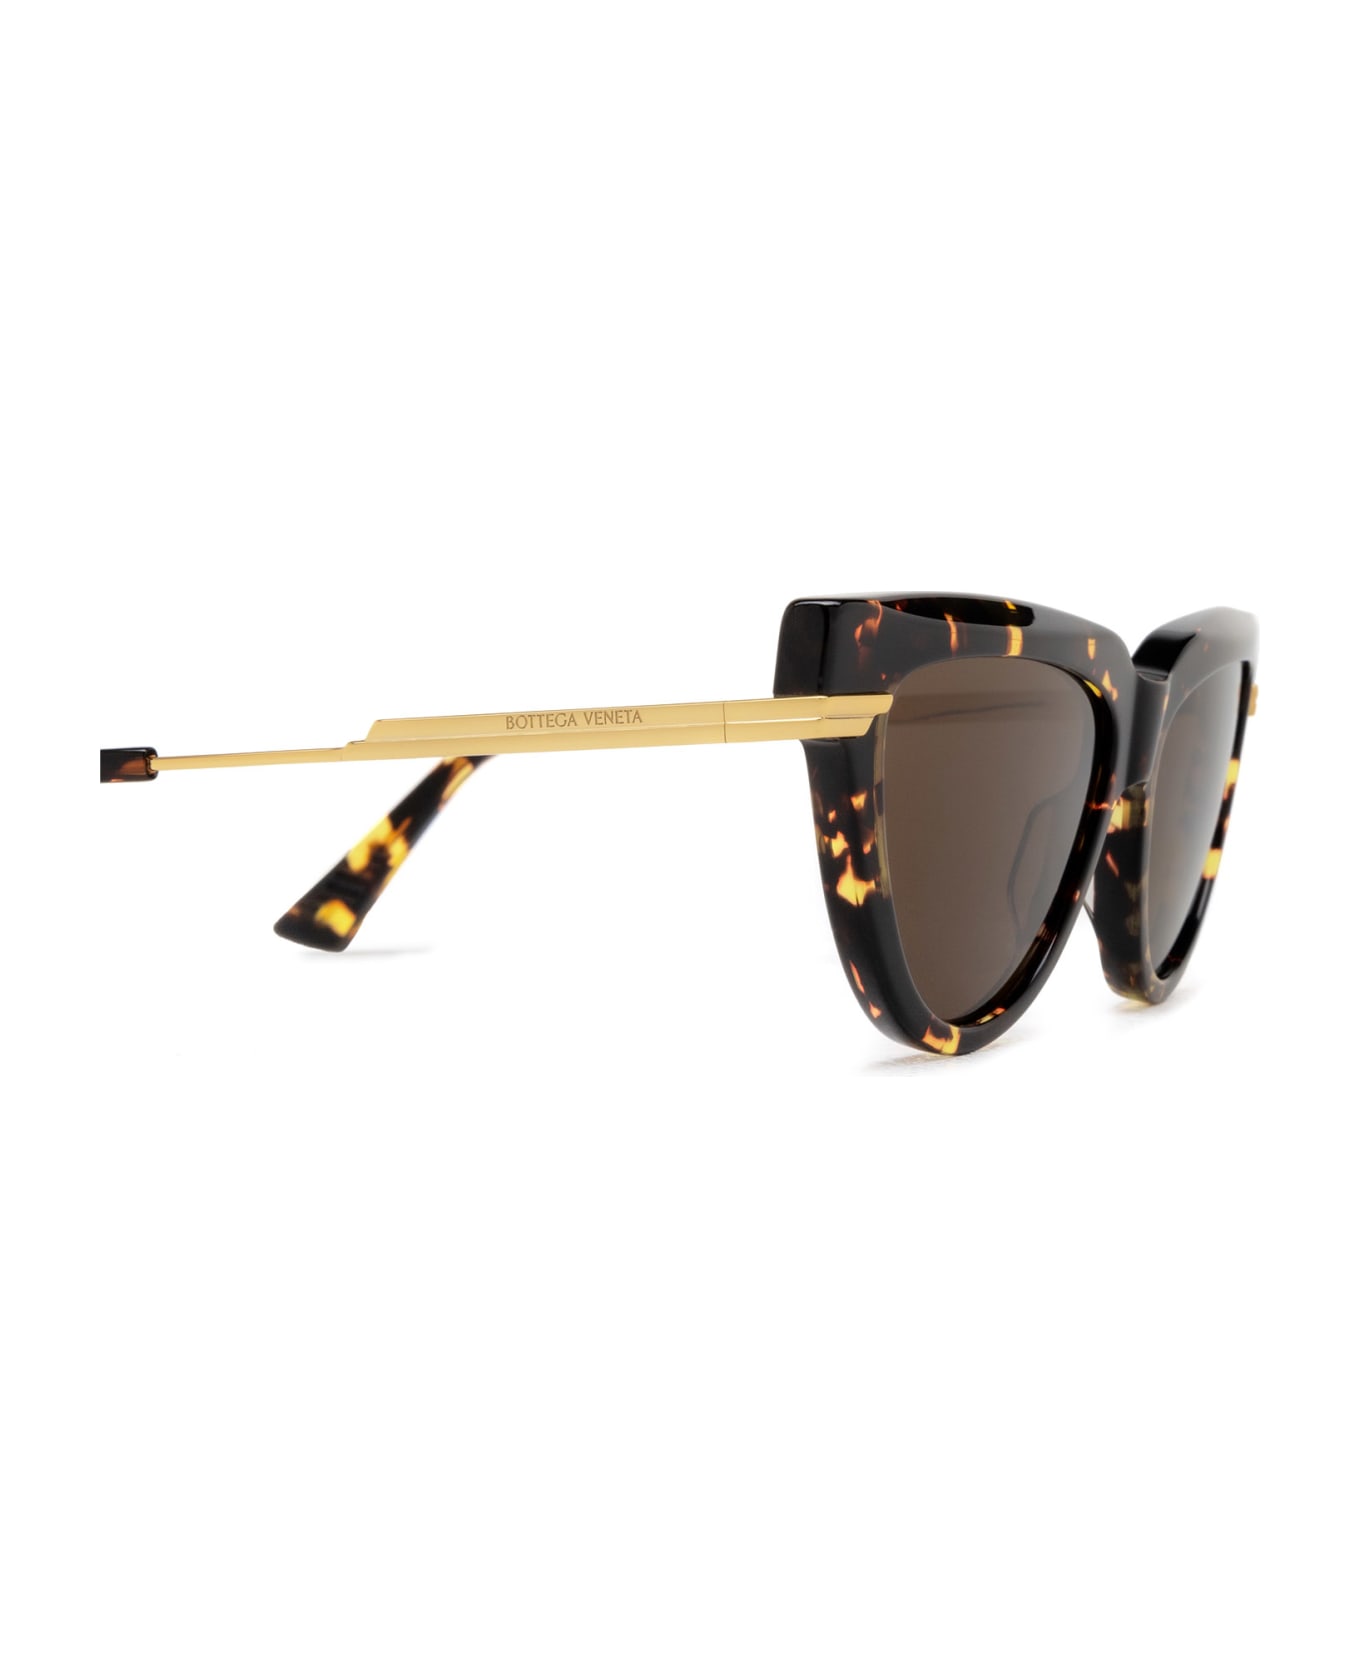 Bottega Veneta Eyewear Bv1265s Havana Sunglasses - Havana